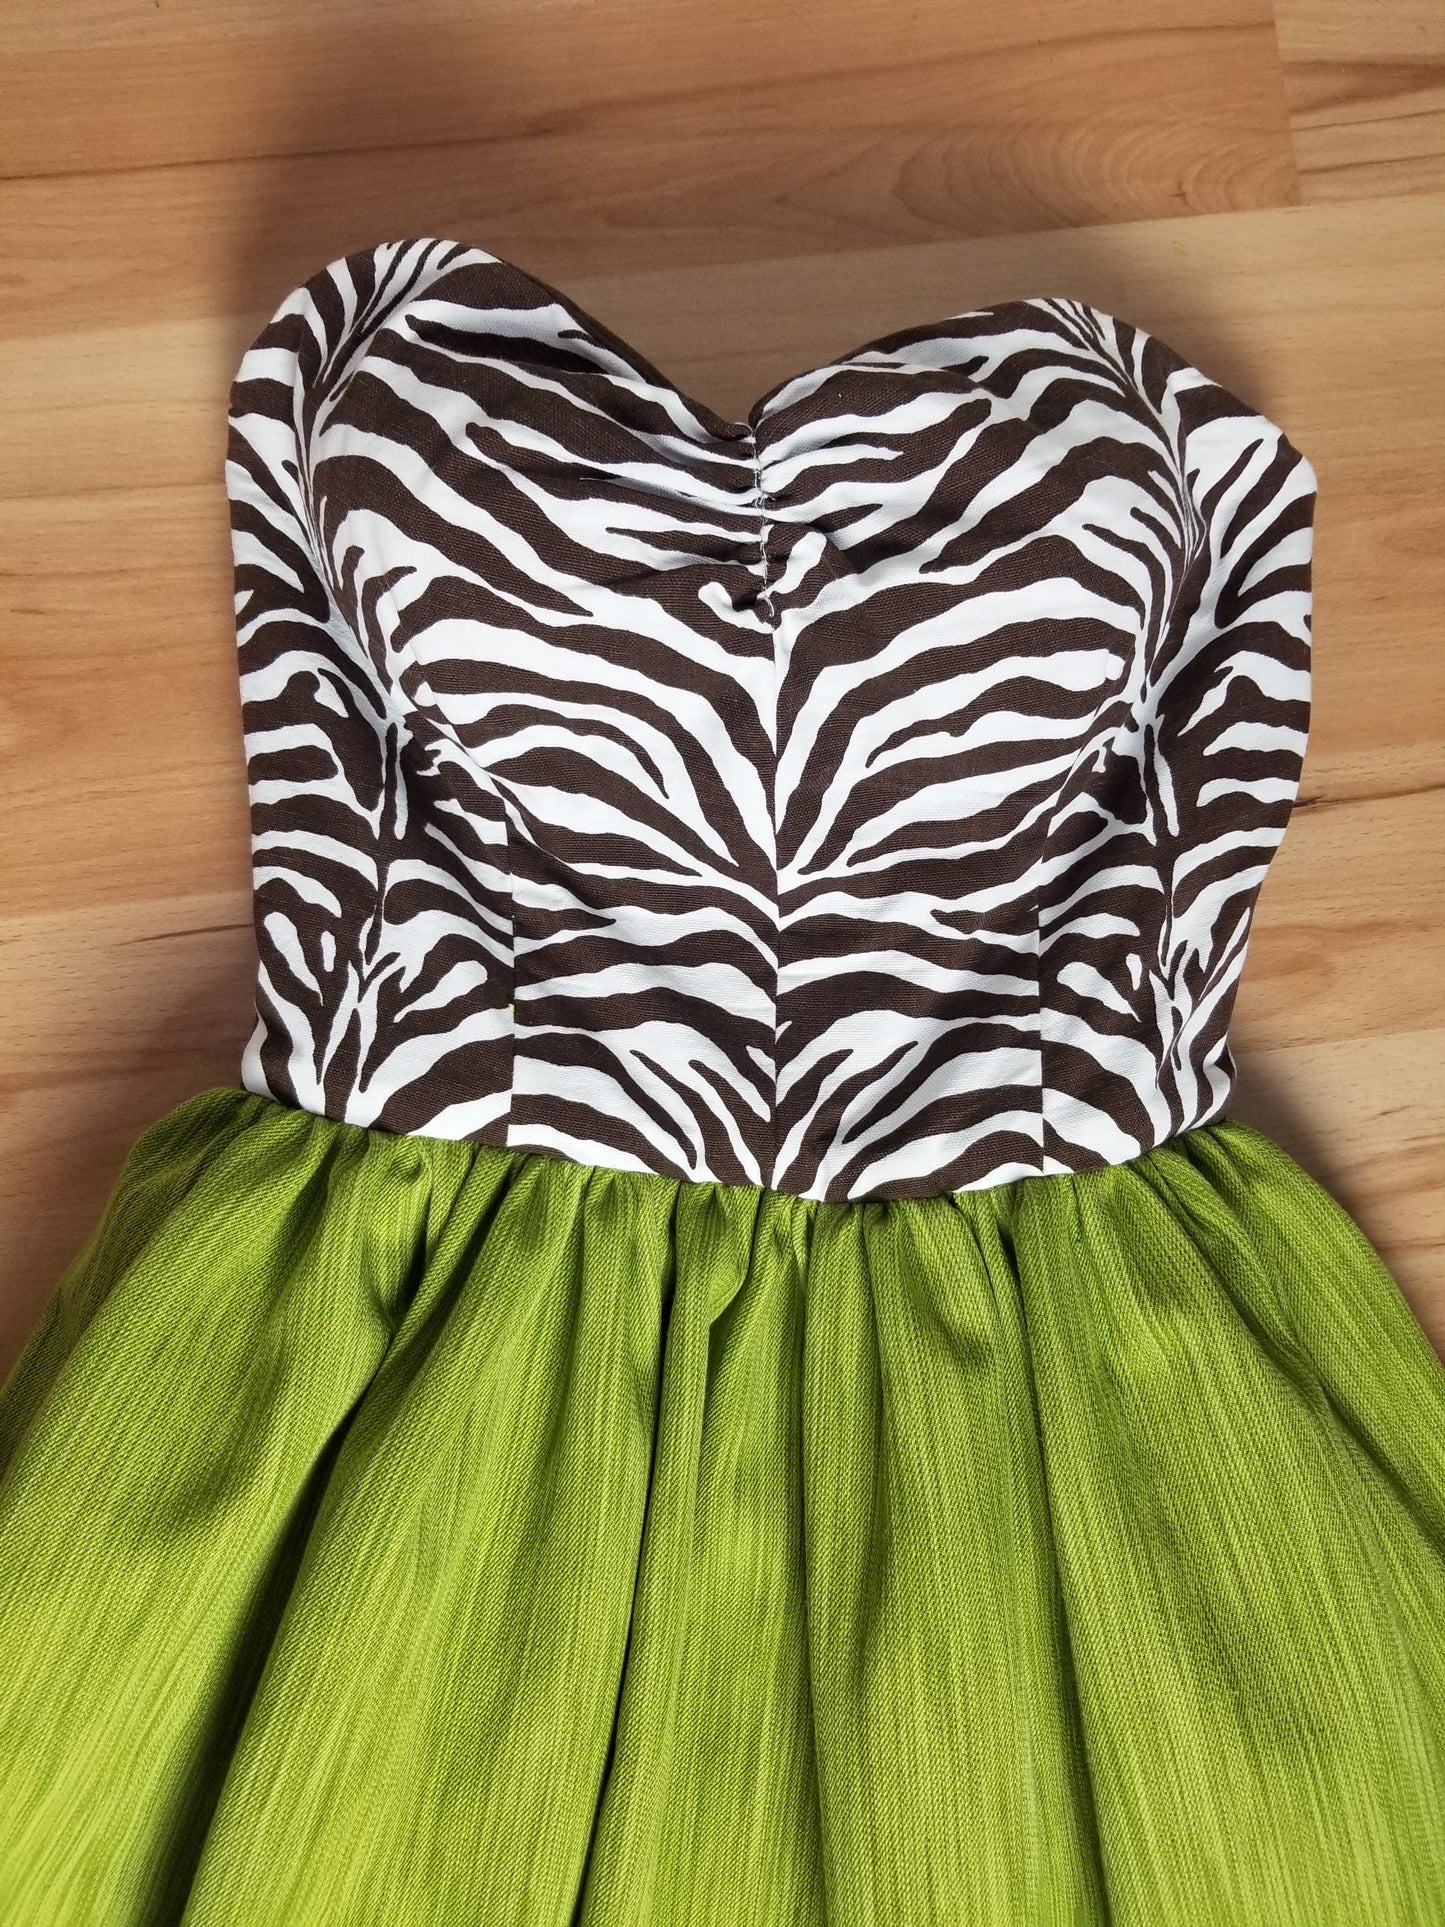 Zebra Chartruese Women's Dress by PMdesigns by Pamela Marie